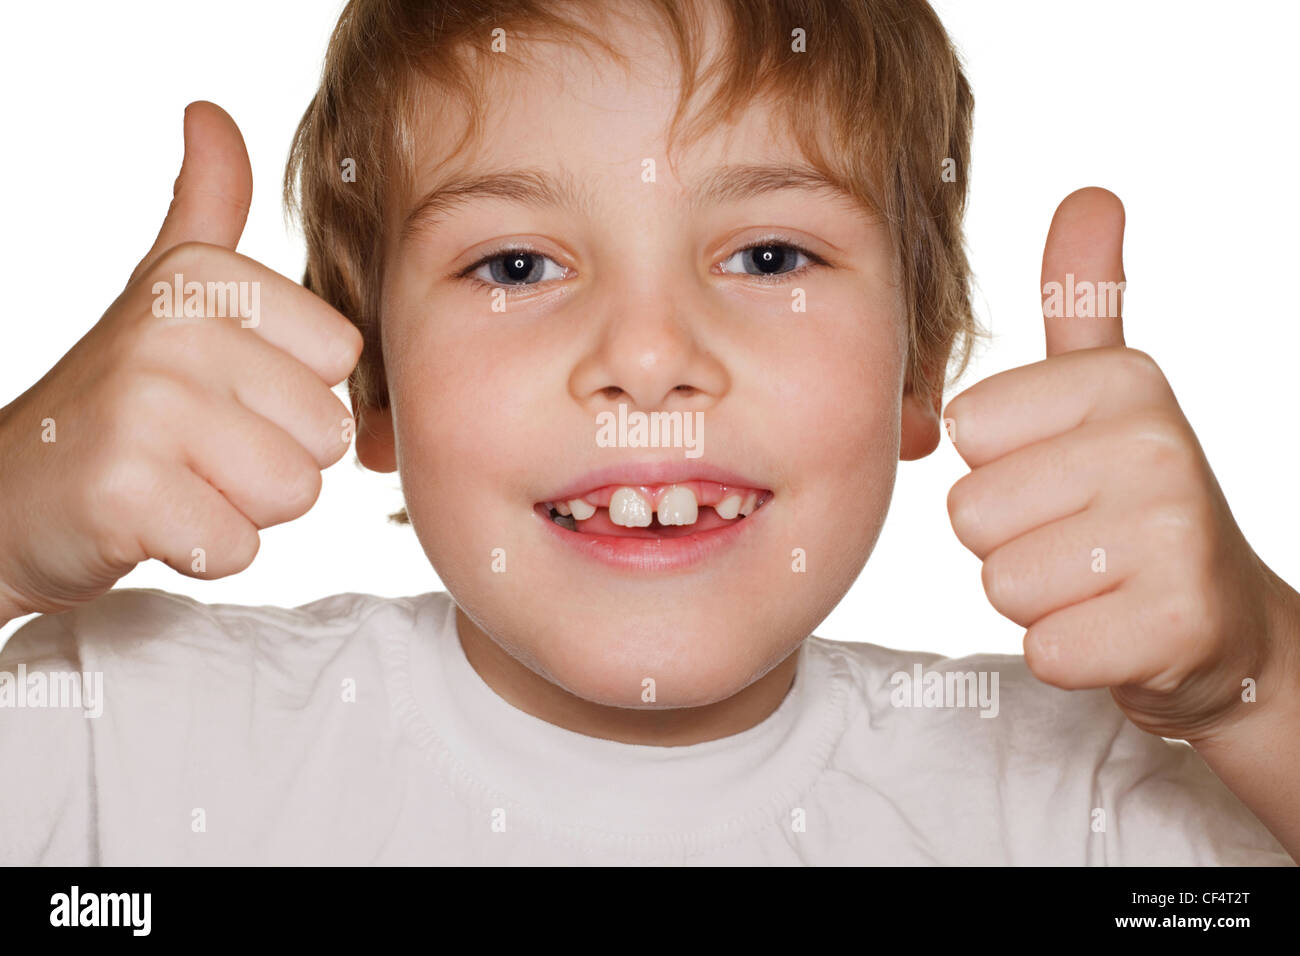 Porträt Kleinkind in einem weißen T-shirt Fotostudio Lächeln auf den Lippen und Hände hoch. Ringblitz Stockfoto